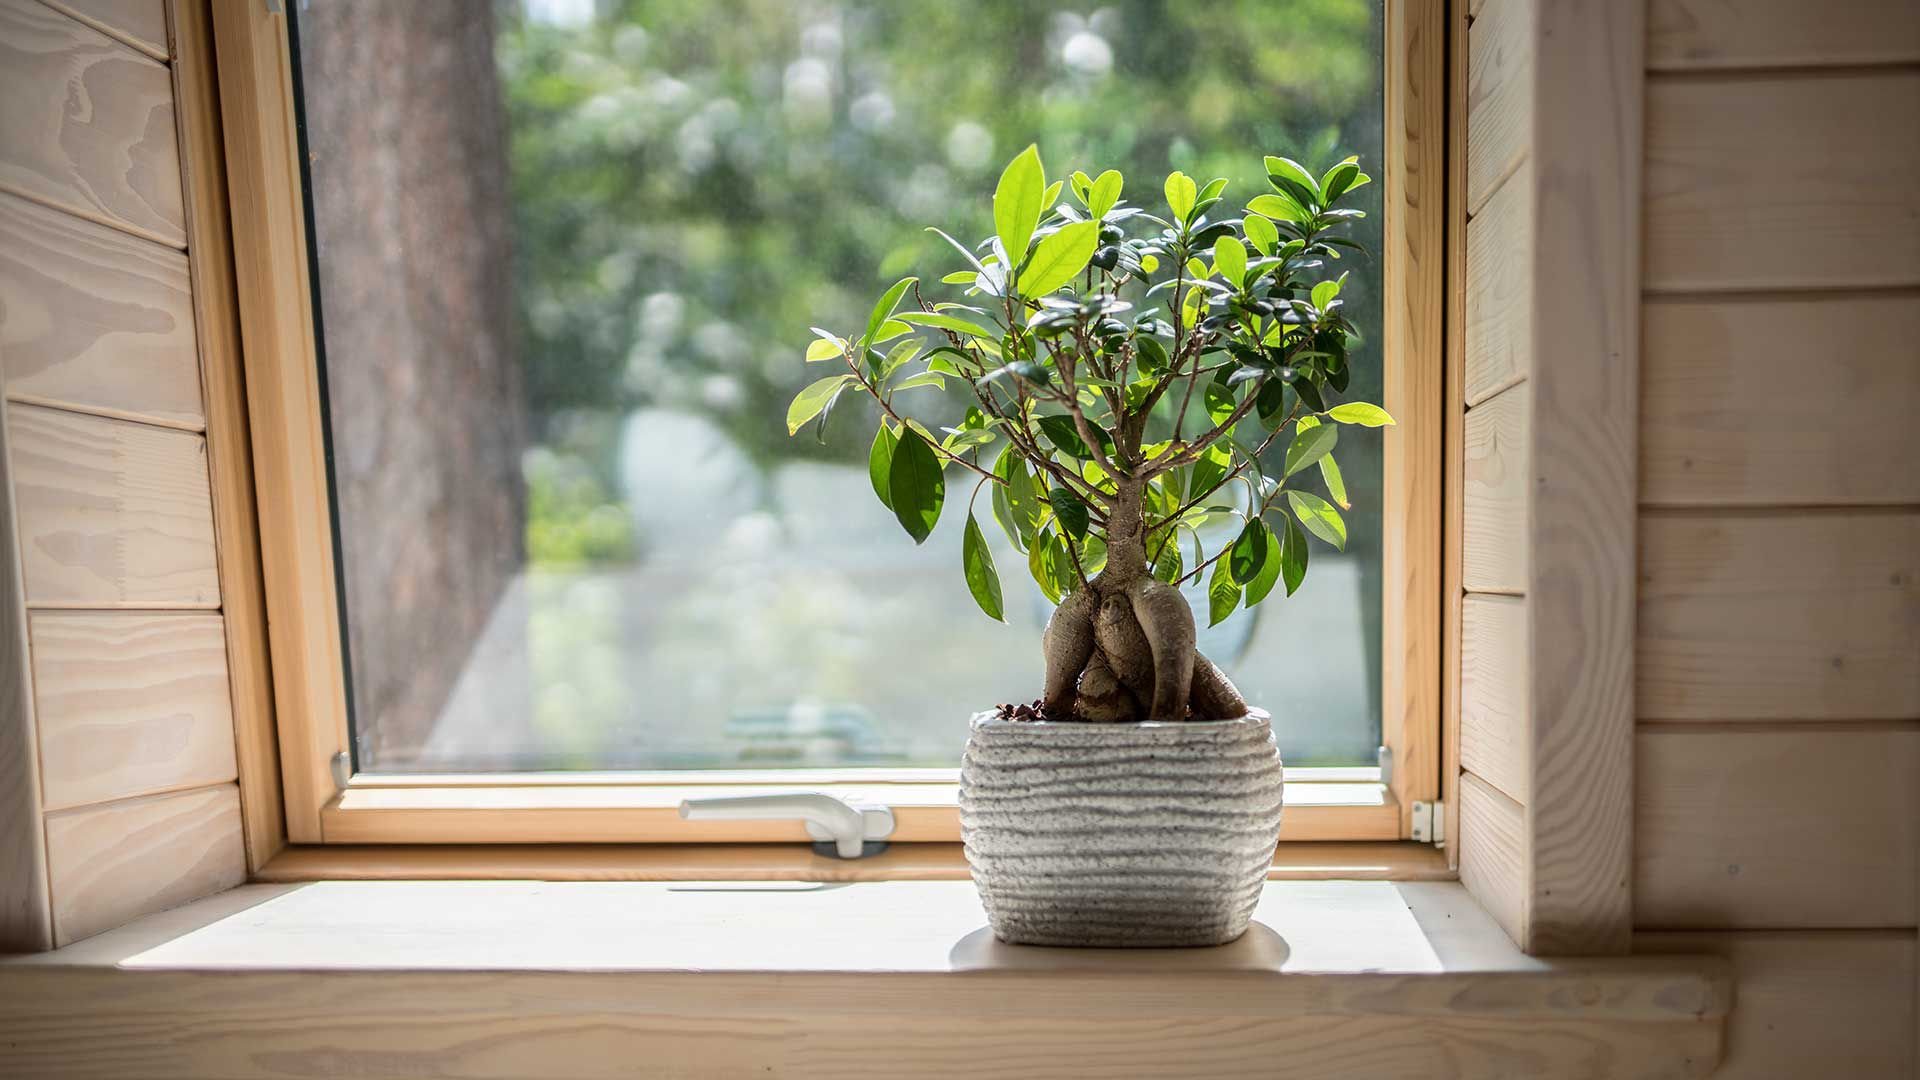 KFW Förderung Dachfenster Bonsai Baum